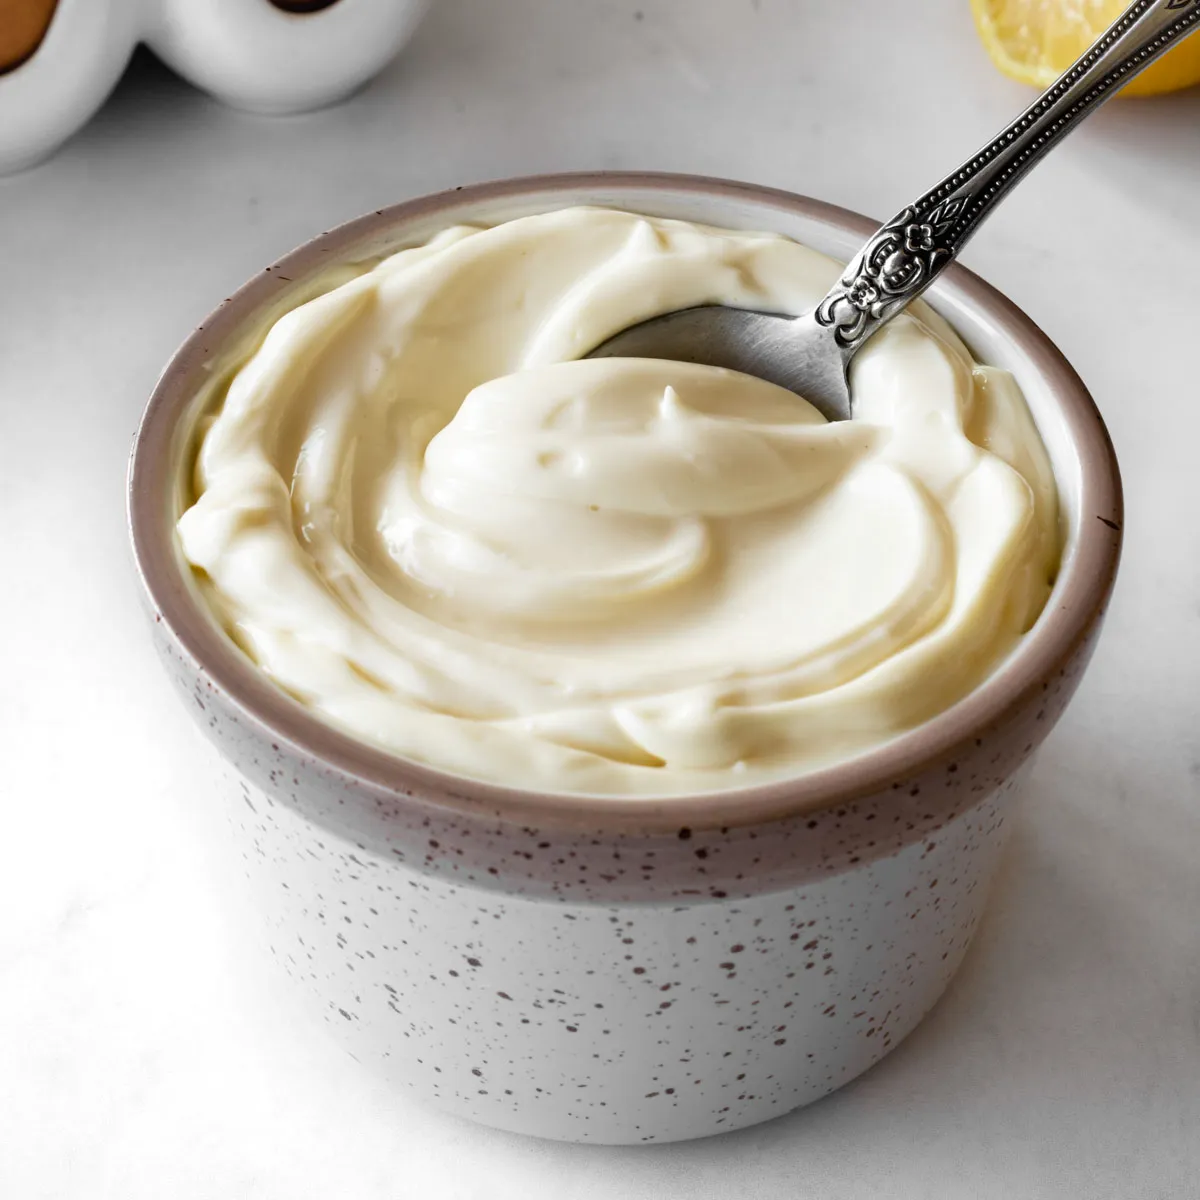 mayonnaise verwenden um festgestecktes kaugummi aus haaren zu entfernen